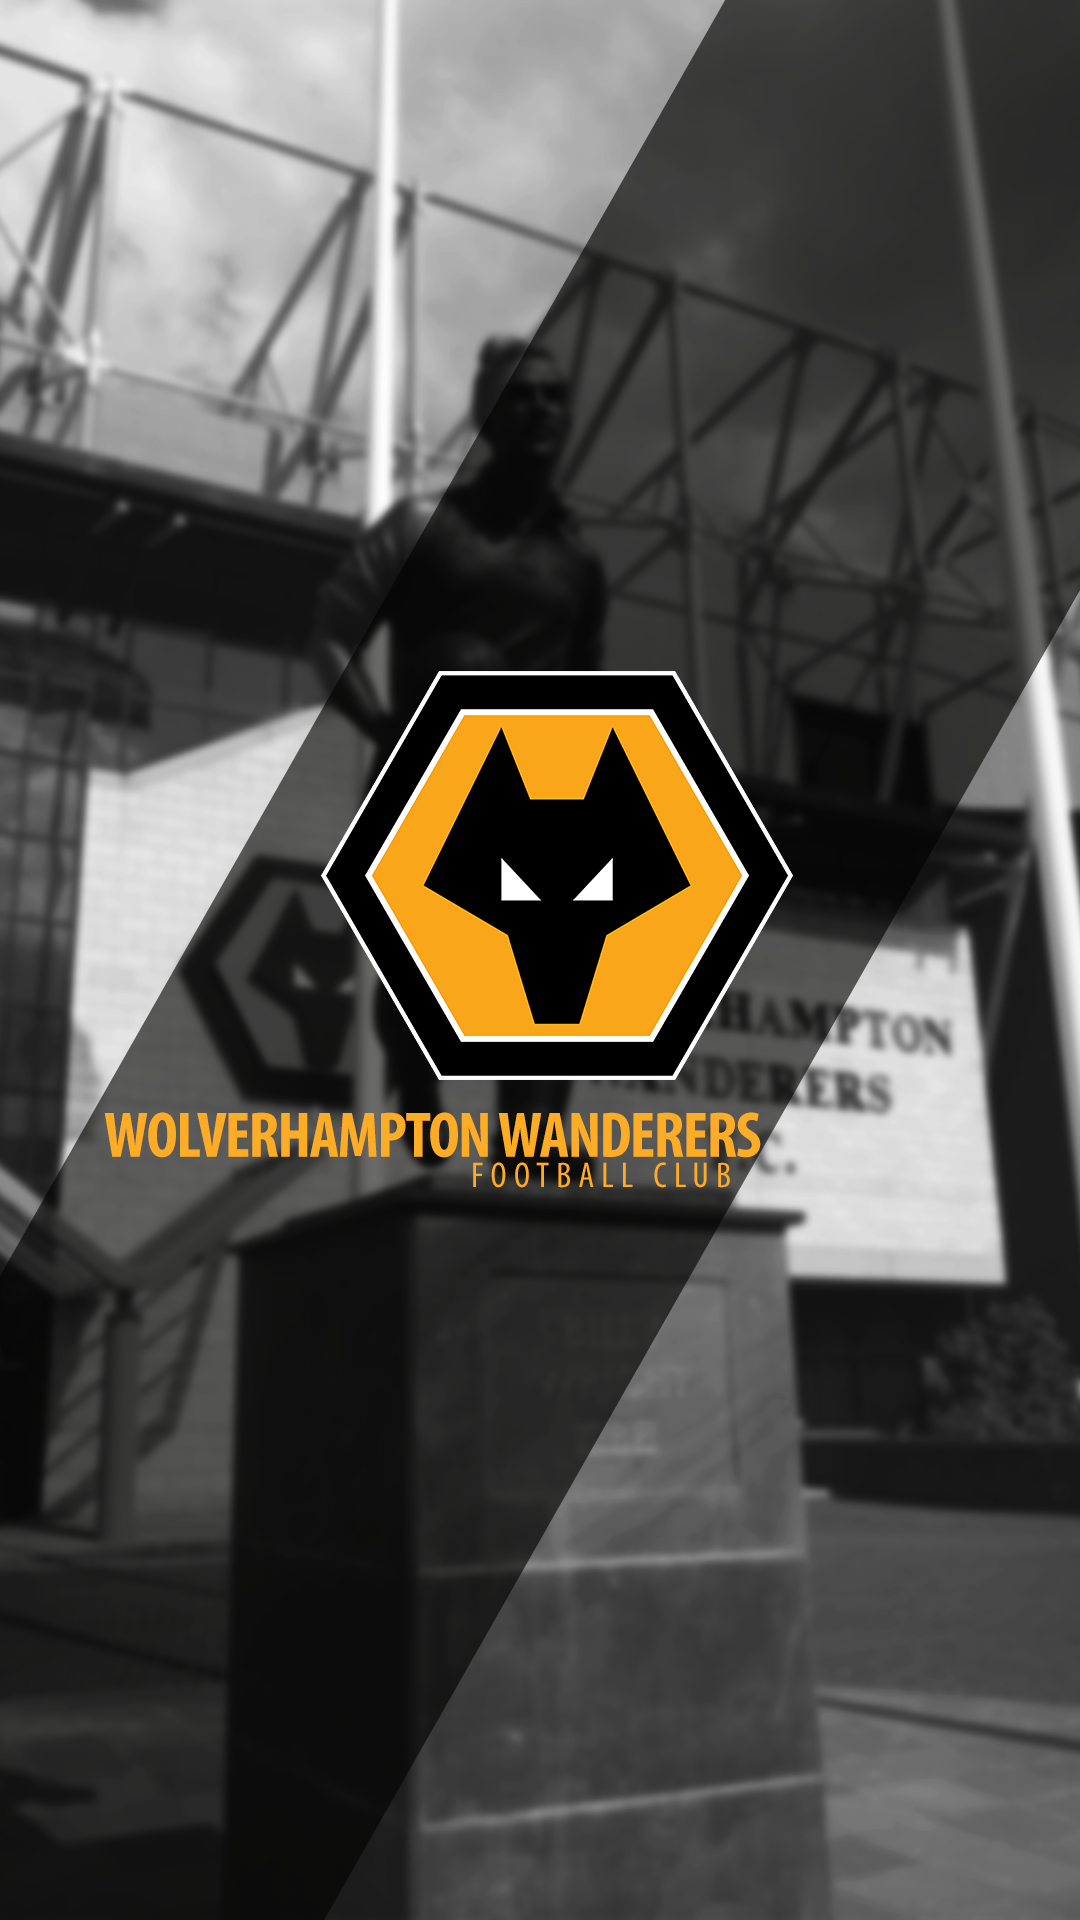 [11+] Wolverhampton Wanderers F.C. Wallpapers | WallpaperSafari